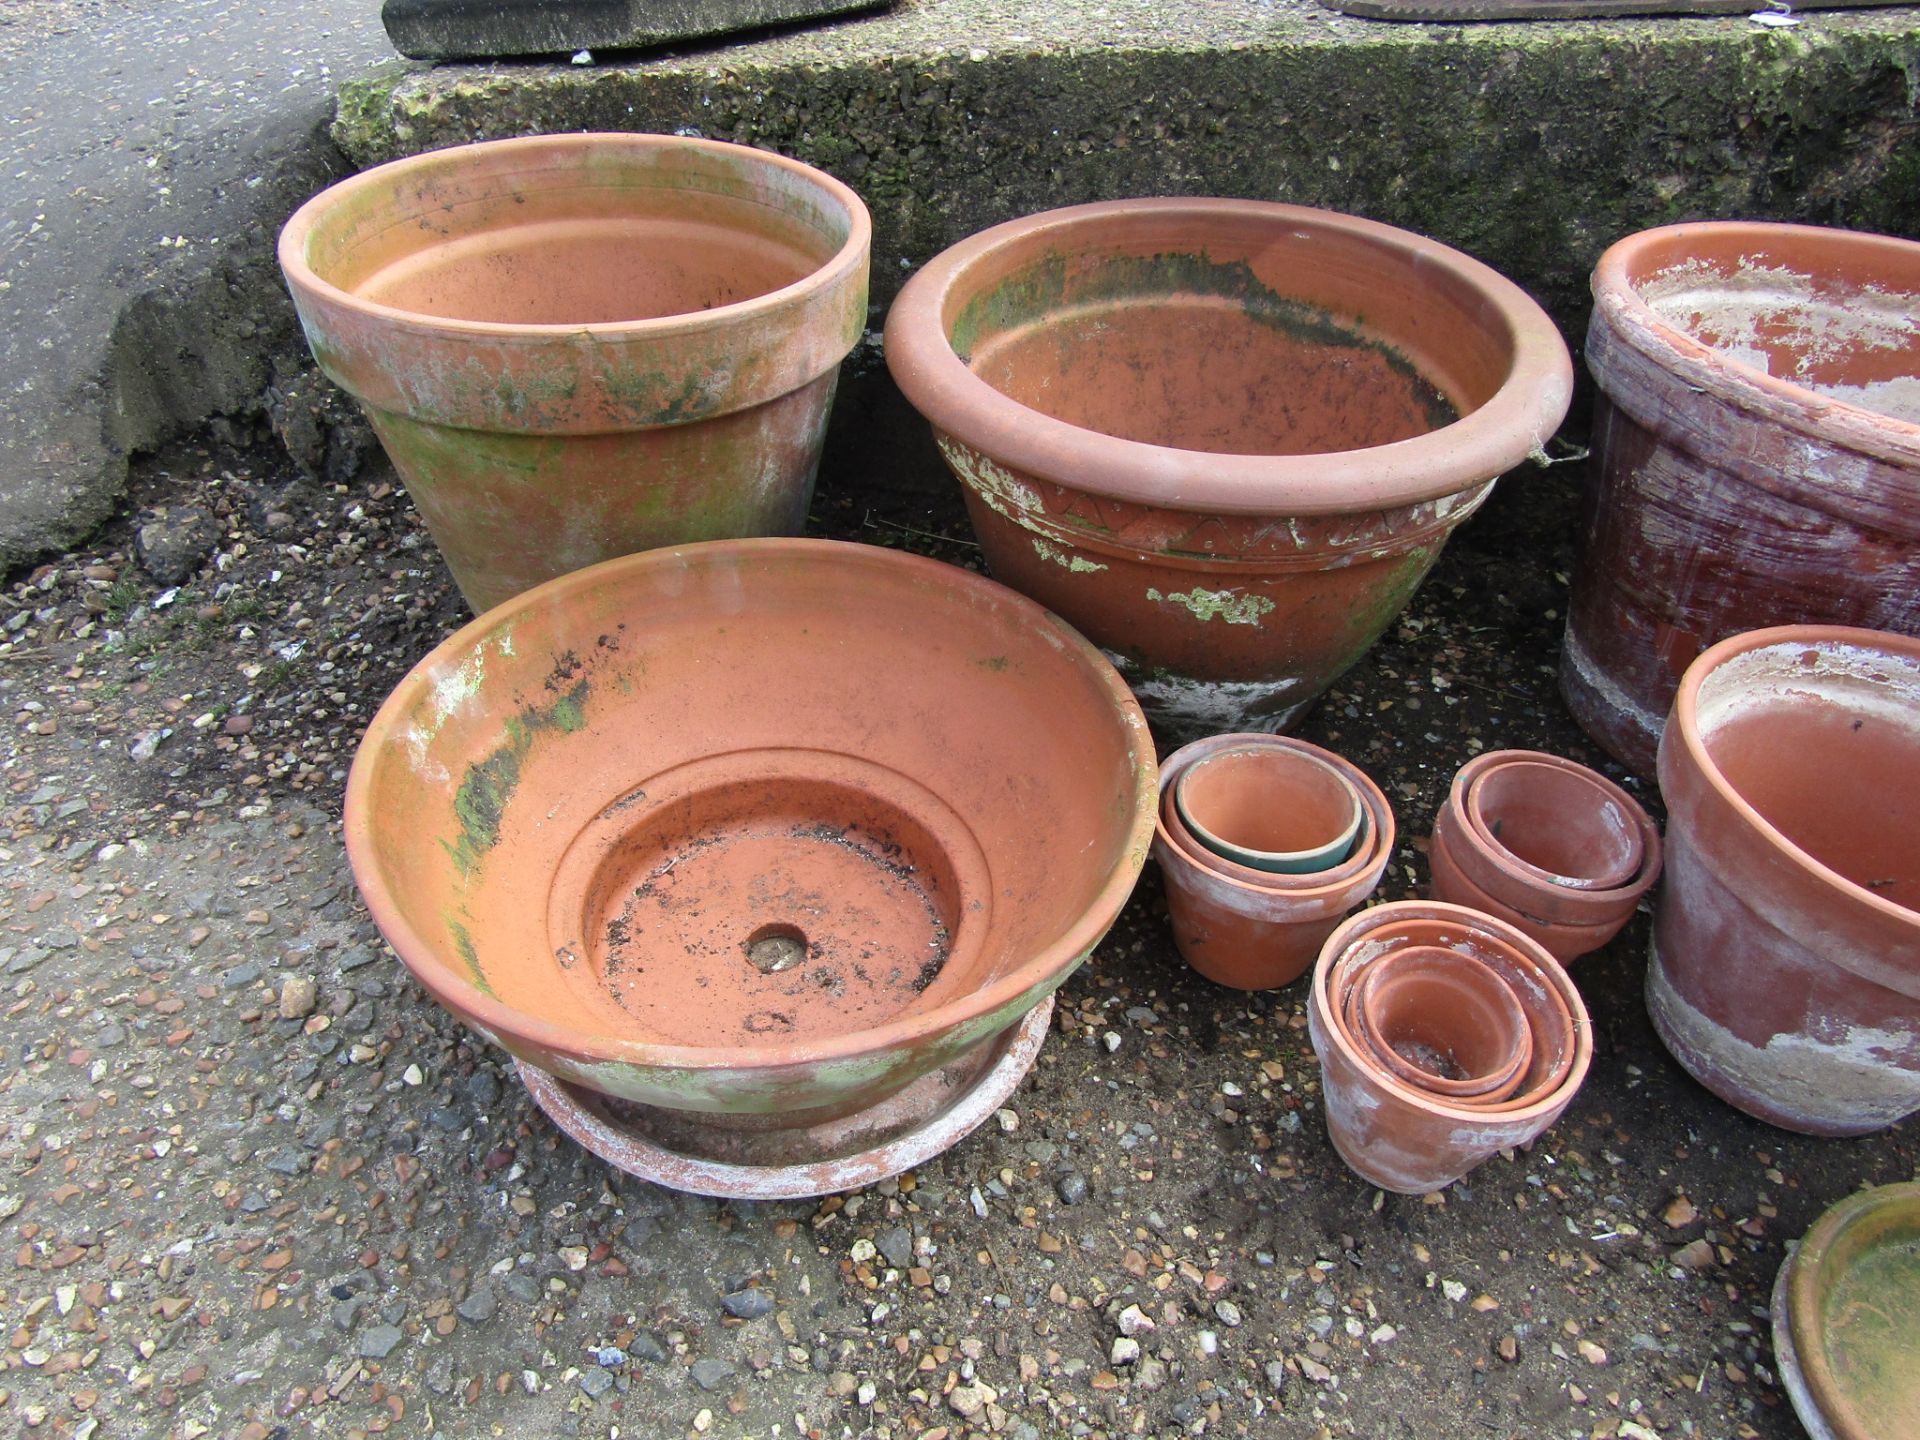 Terracotta garden pots - Image 2 of 3